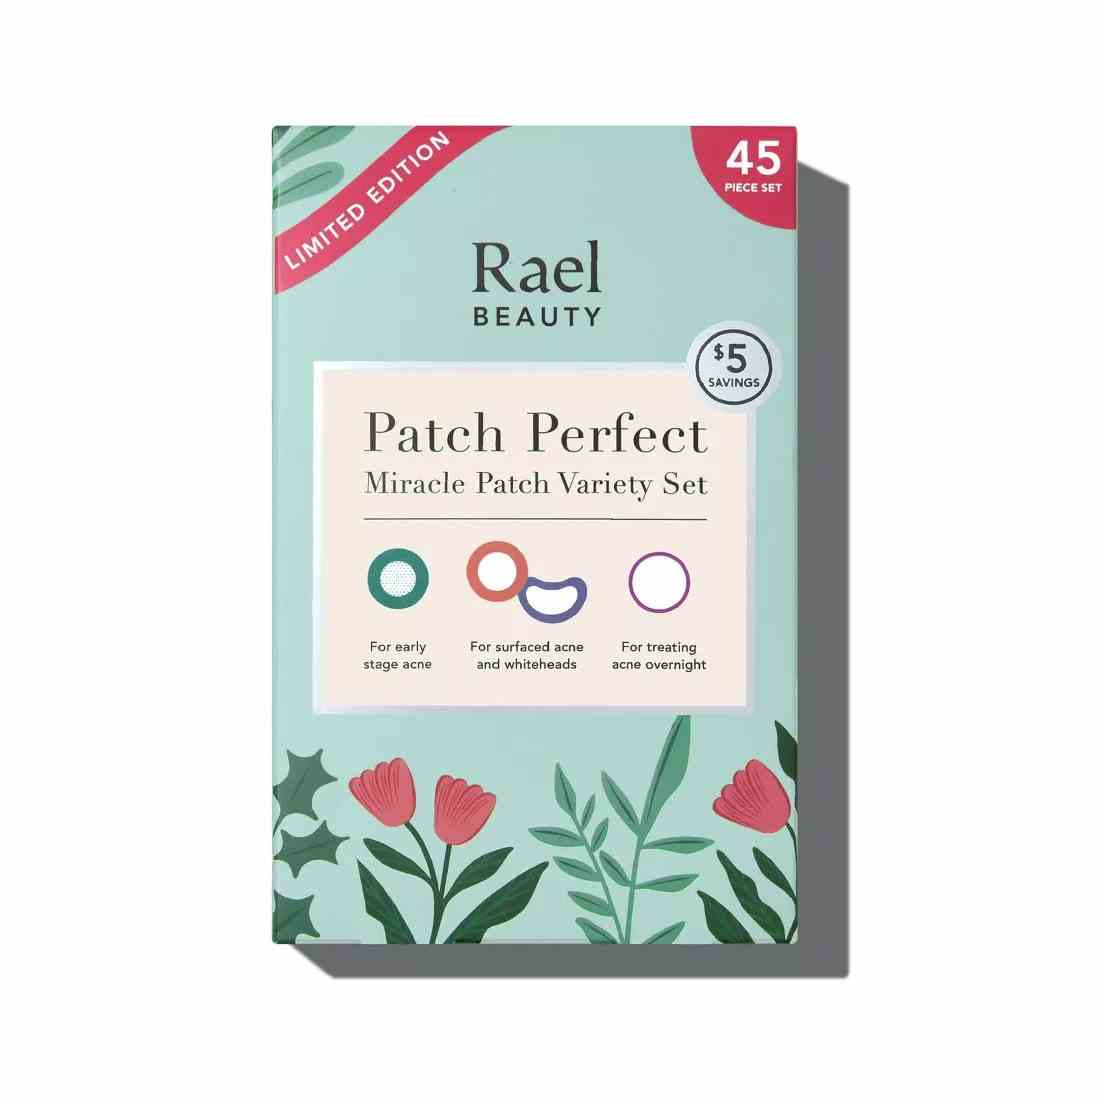 Rael Patch Perfect Miracle Patch Variety Set blaue Blumenbox auf weißem Hintergrund